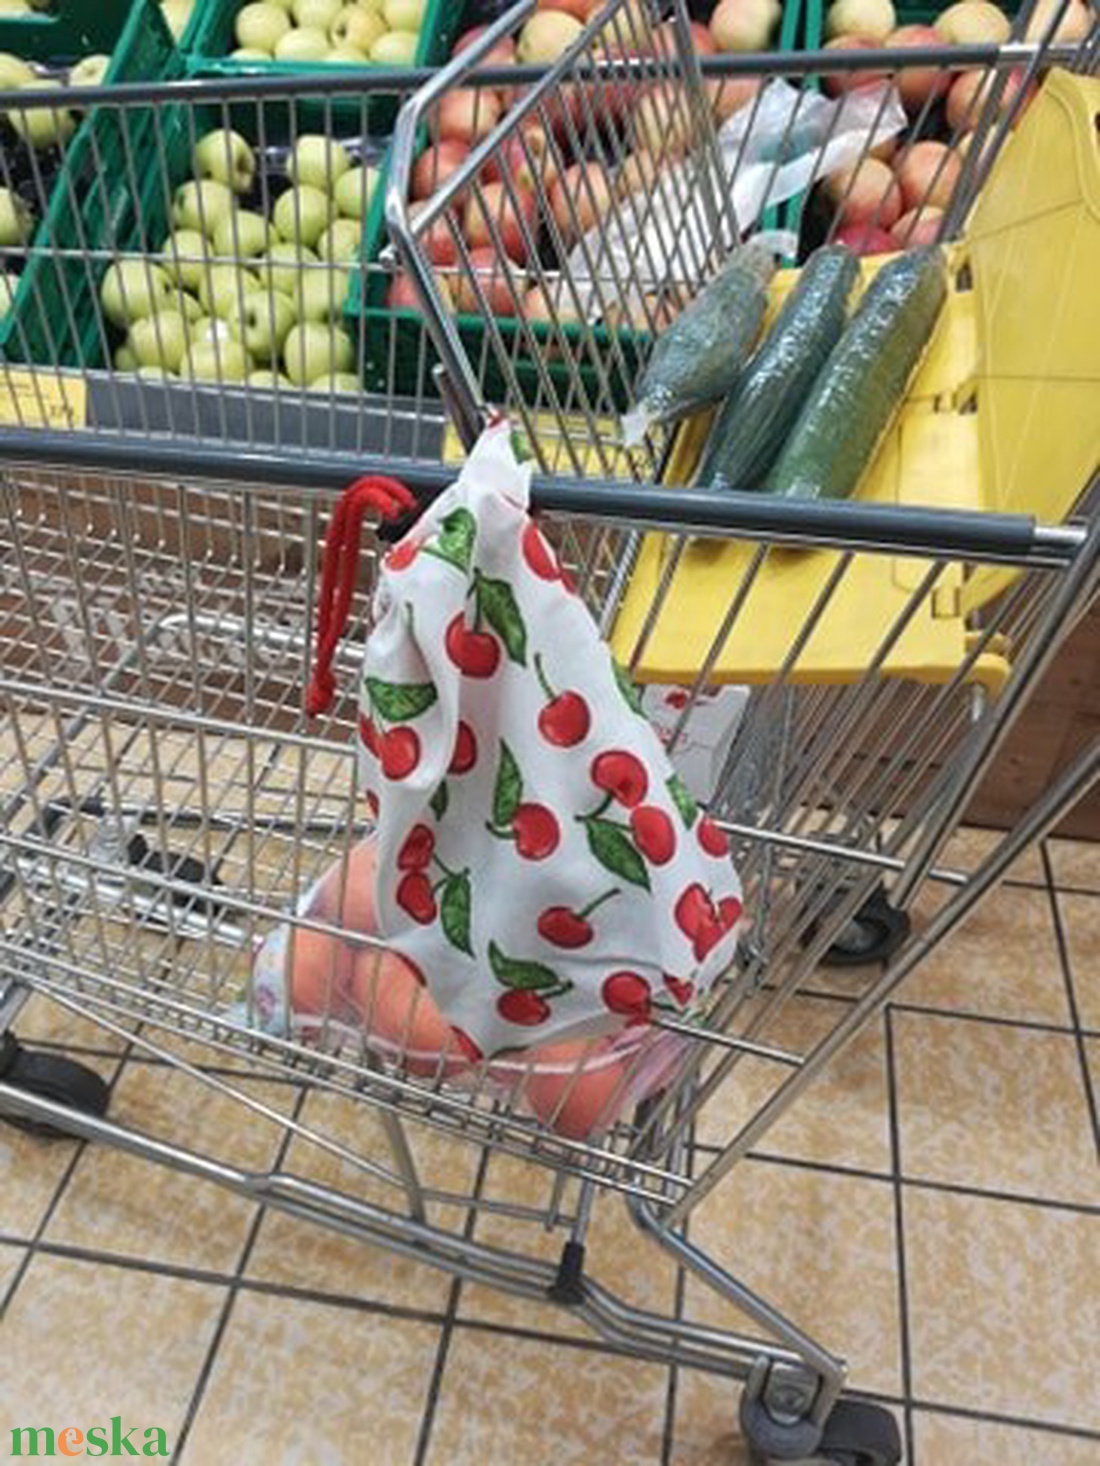 ÖKO  zacskó 3+2 darabos, lámás  - táska & tok - bevásárlás & shopper táska - zöldség/gyümölcs zsák - Meska.hu